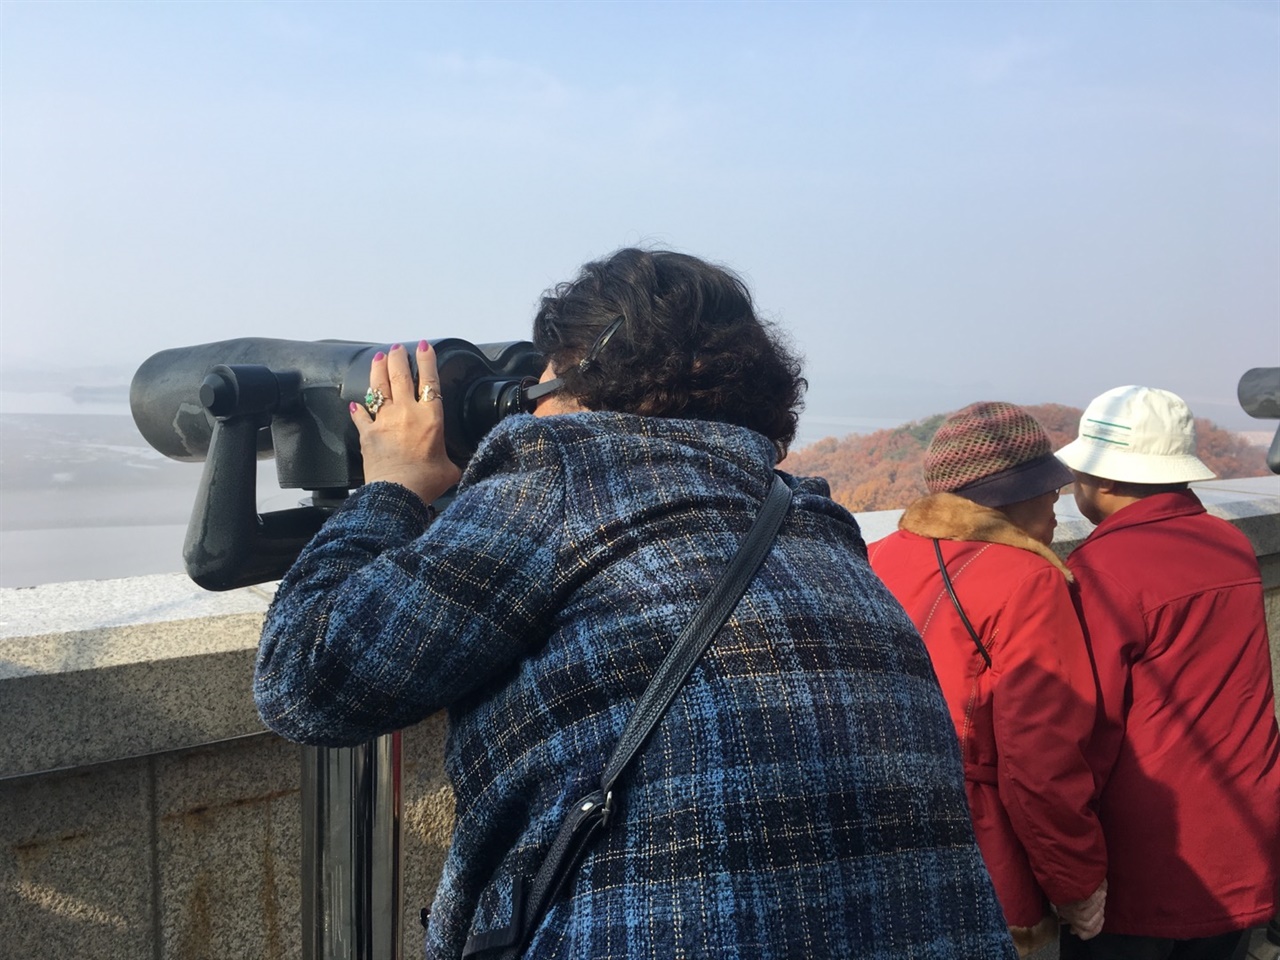 개풍군 실향민들이 경기도 파주 오두산 통일전망대를 찾아 망원경으로 강건너 고향을 살펴보고 있다. 